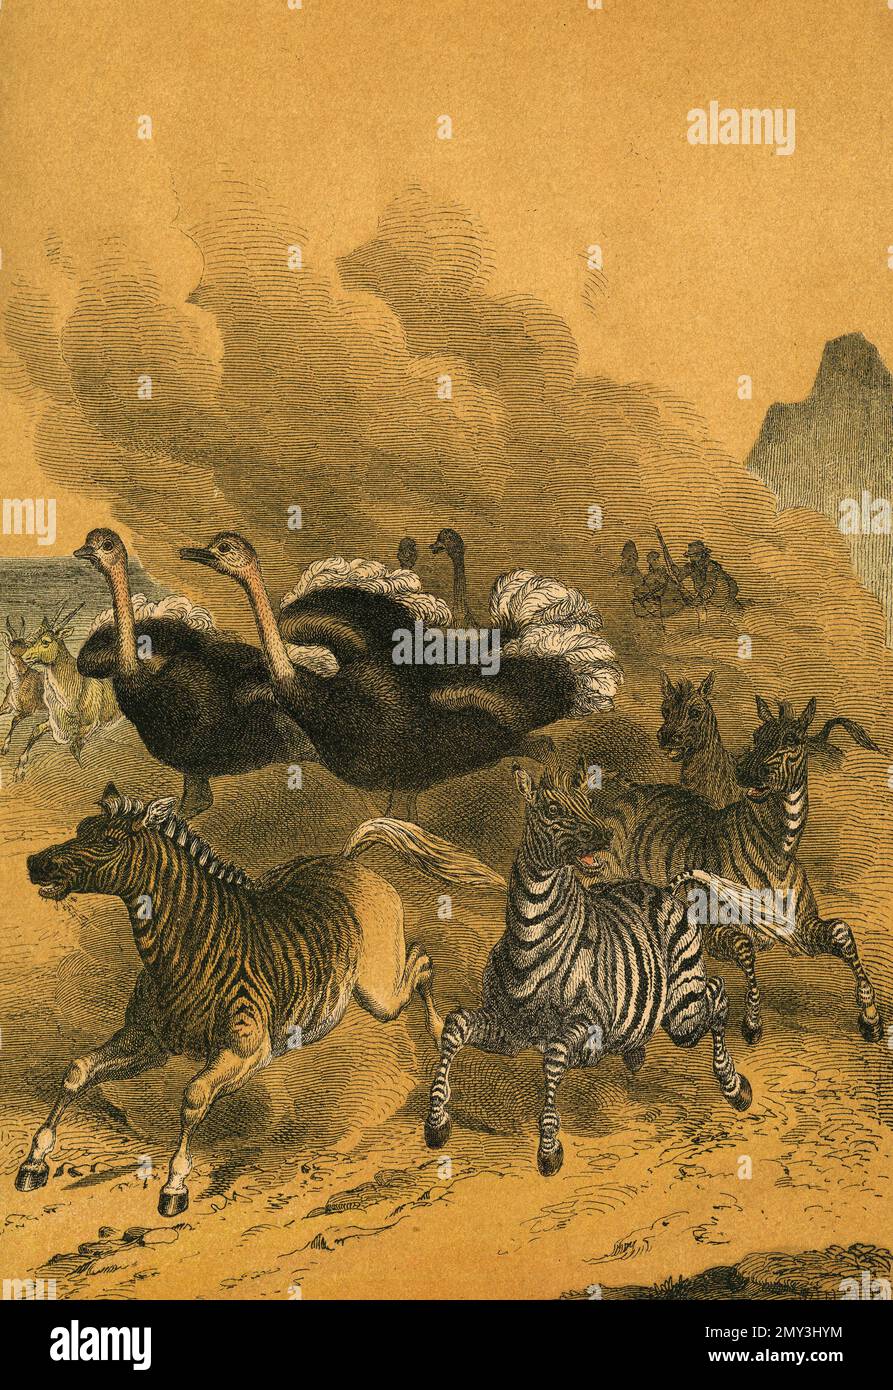 Tierwelt im südlichen Afrika: Eeland-Antelope, Quagga, Zebra und Strauß, Farbdarstellung, das lehrreiche Bilderbuch von Adam White, 1868 Stockfoto